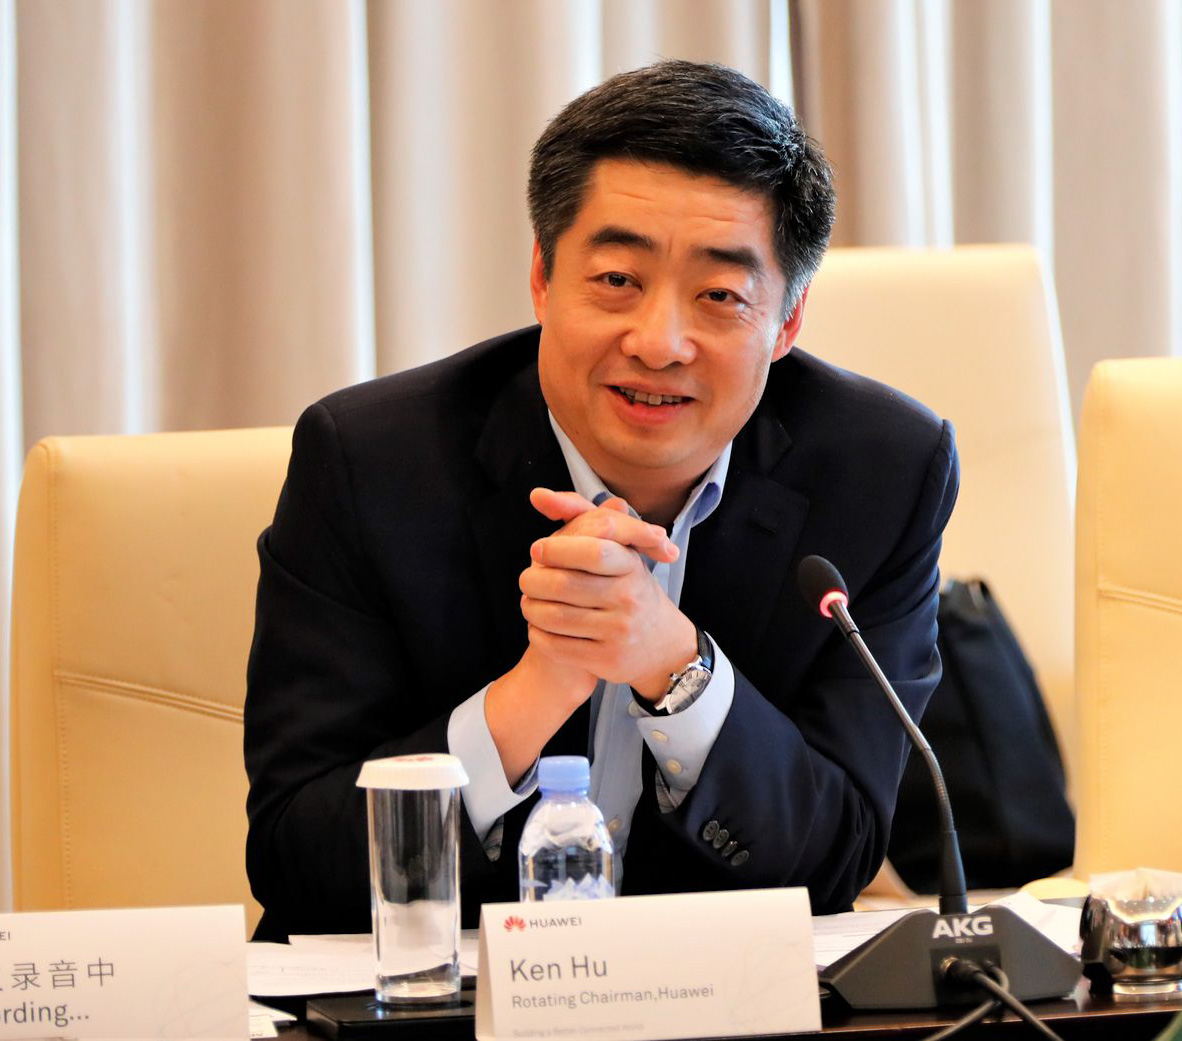 В Китае прошла презентация Huawei по вопросам безопасности